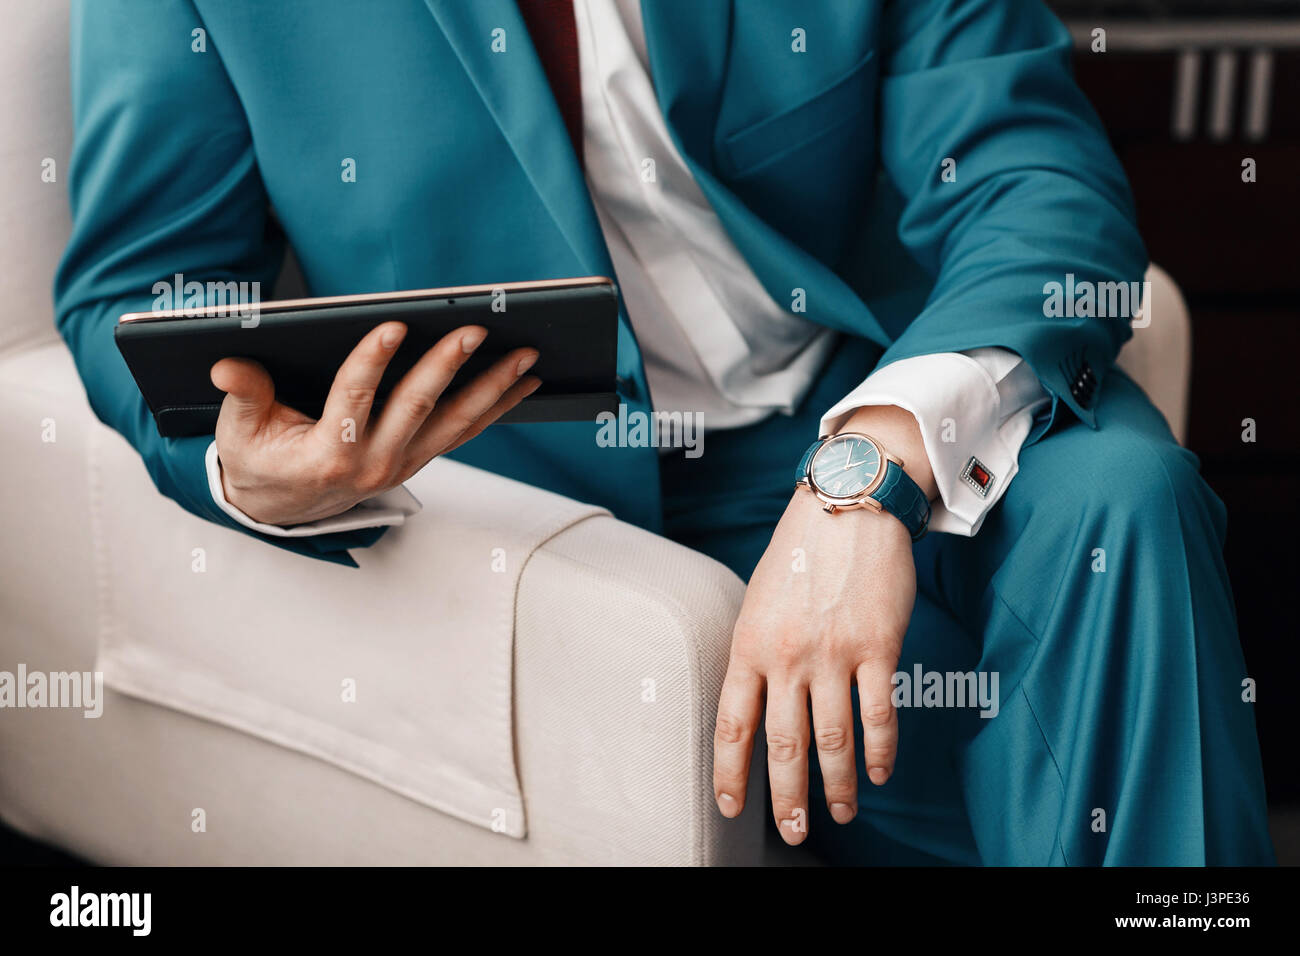 Geschäftsmann halten Sie ein digitale Tablet in der hand beim Sitzen auf einem Sofa in einem blauen Anzug. auf Hand teure mechanische Uhr mit Lederarmband. Hemd mit Manschettenknöpfen Stockfoto